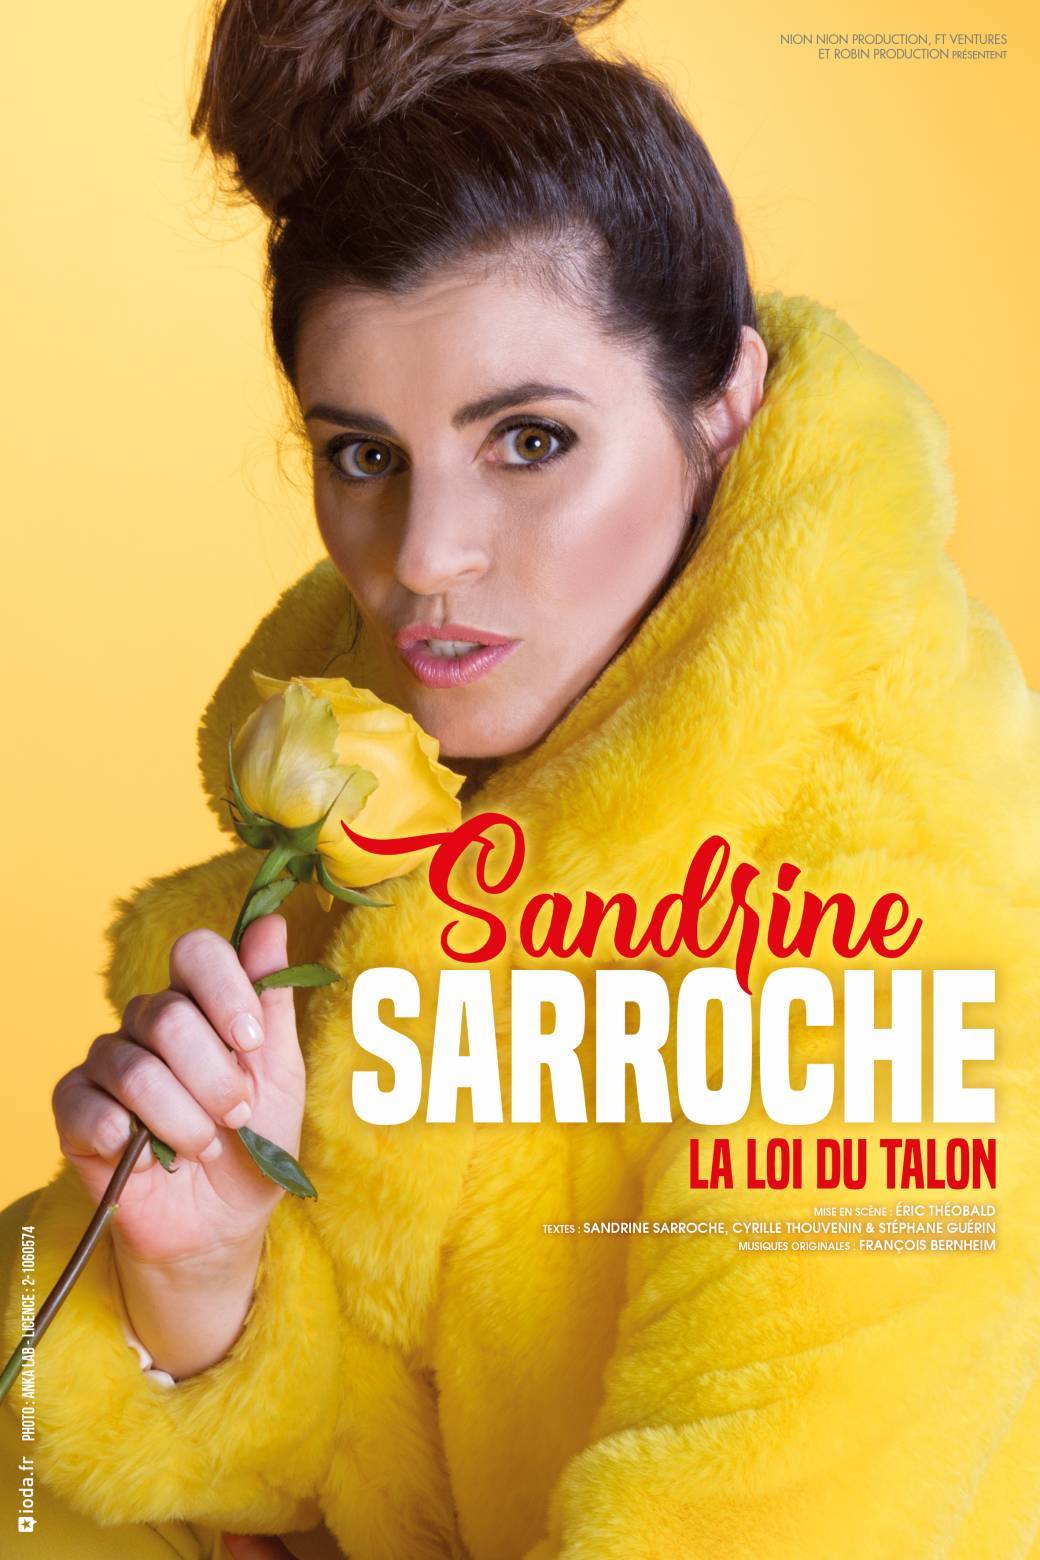 Sandrine Sarroche - La loi du talon